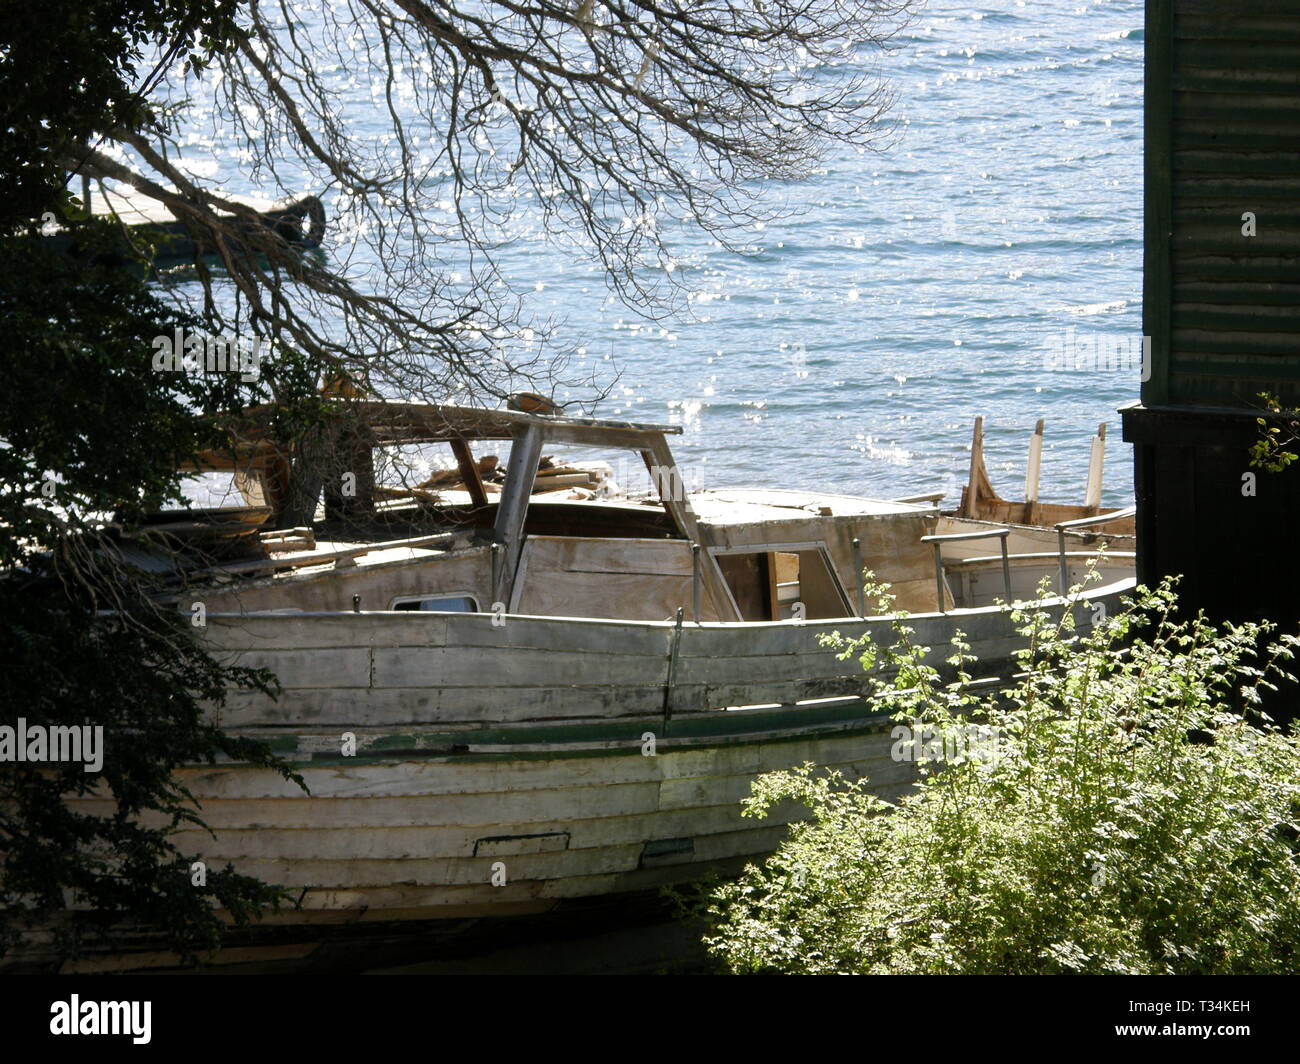 Abandoned Boat on land at Lake Futalaufquen, Chubut, Argentina. Stock Photo